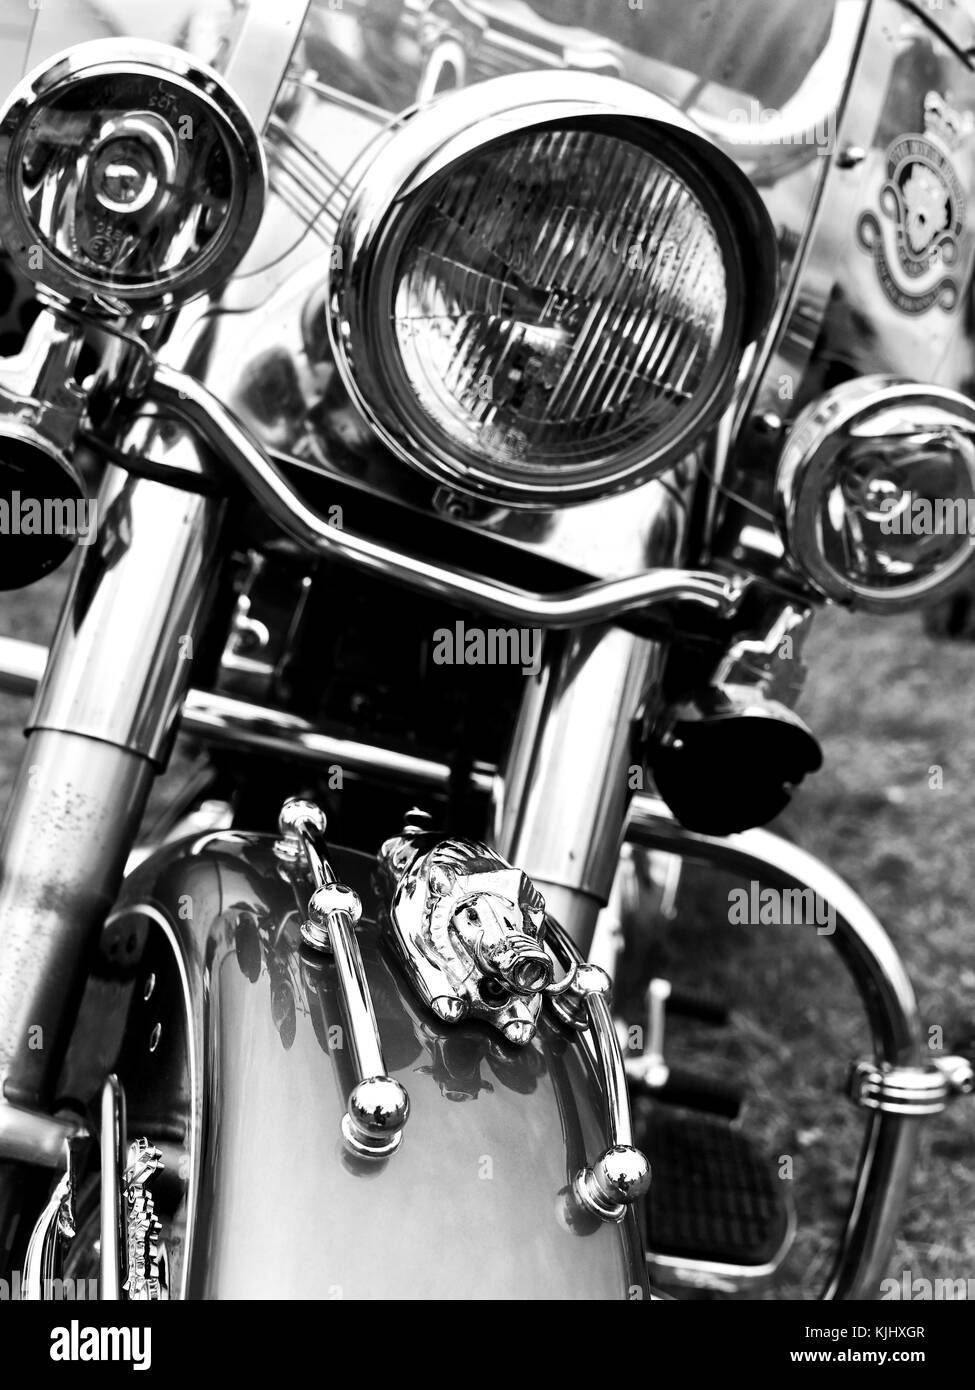 Monochrome B&W Harley Davidson grosse moto à moteur avec une grande mascotte en chrome Hog sur le pare-chocs Banque D'Images